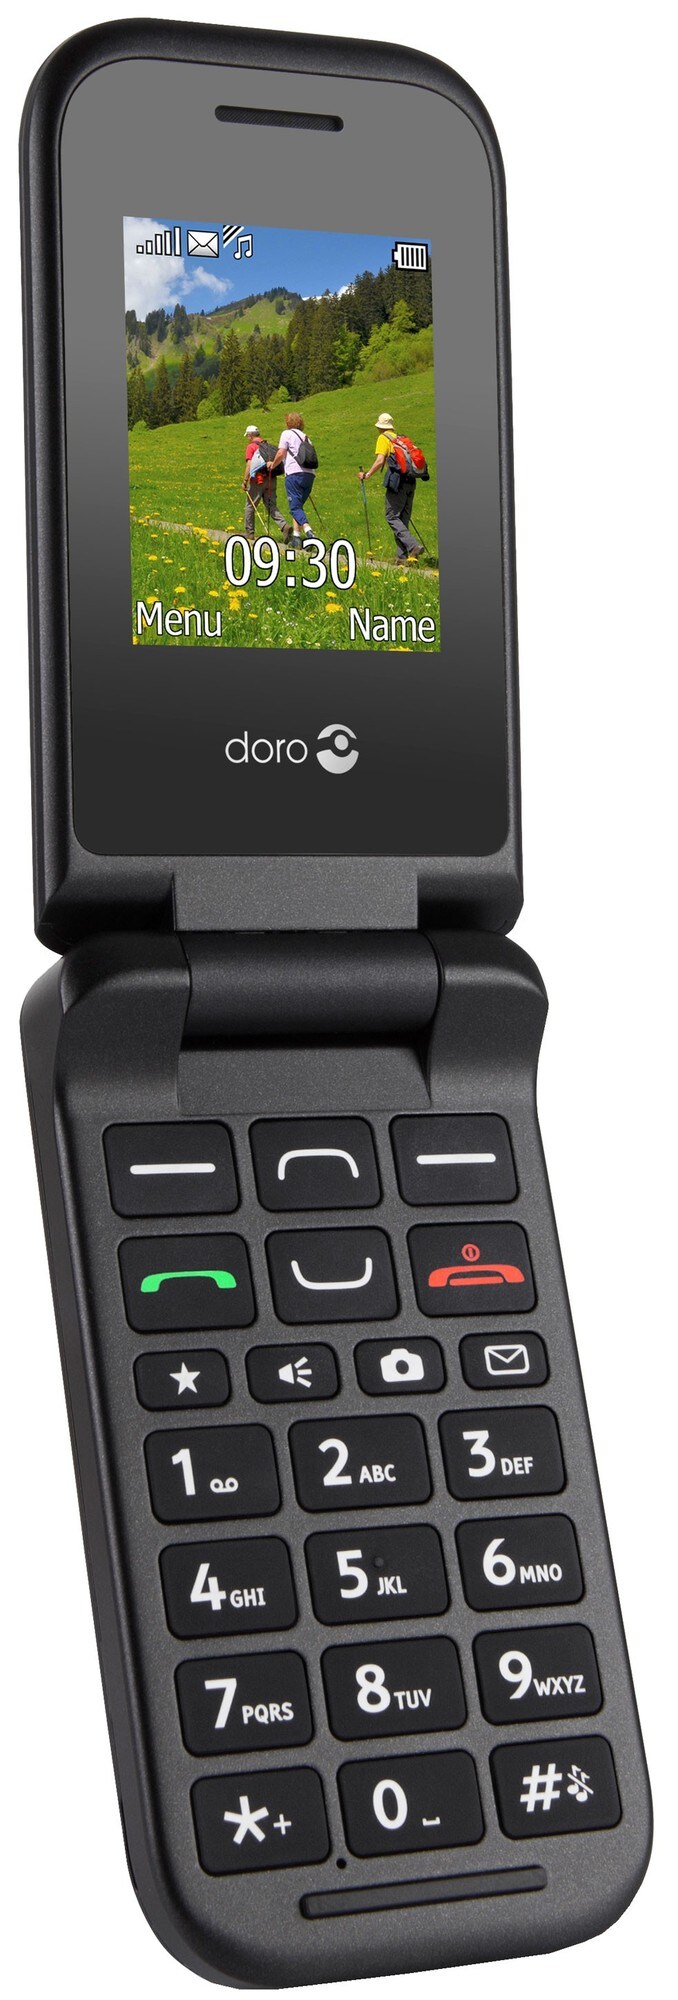 Doro PhoneEasy 609 mobiltelefon – sort - Mobiltelefoner - Elgiganten